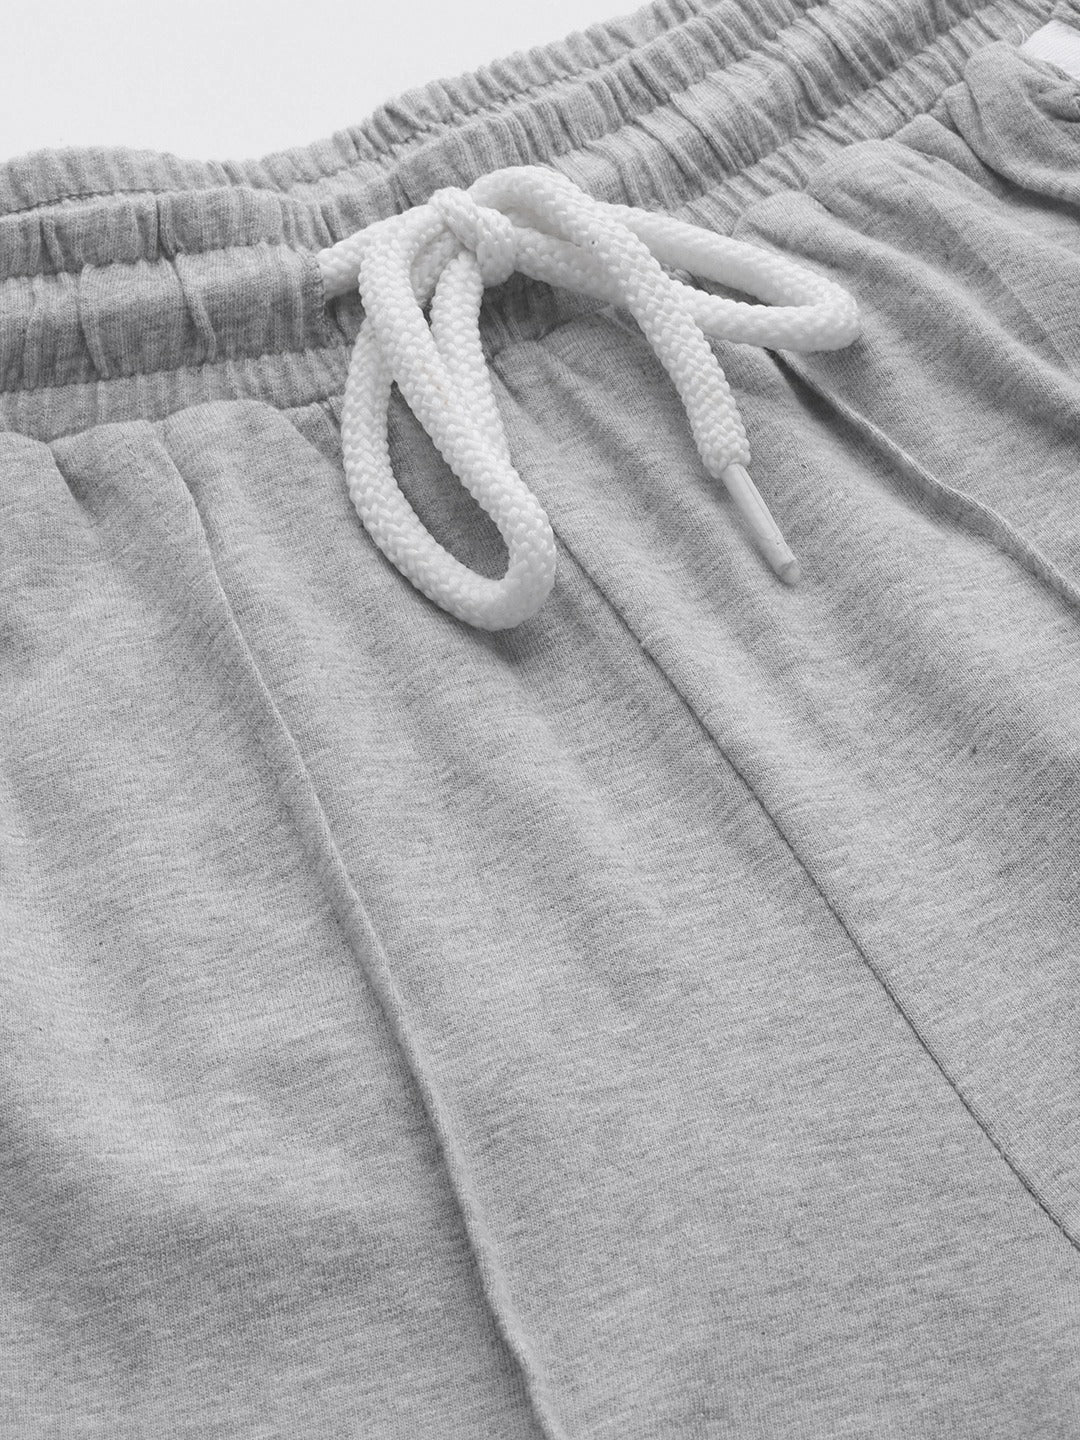 VividArtsy Women Grey Solid Track Pants